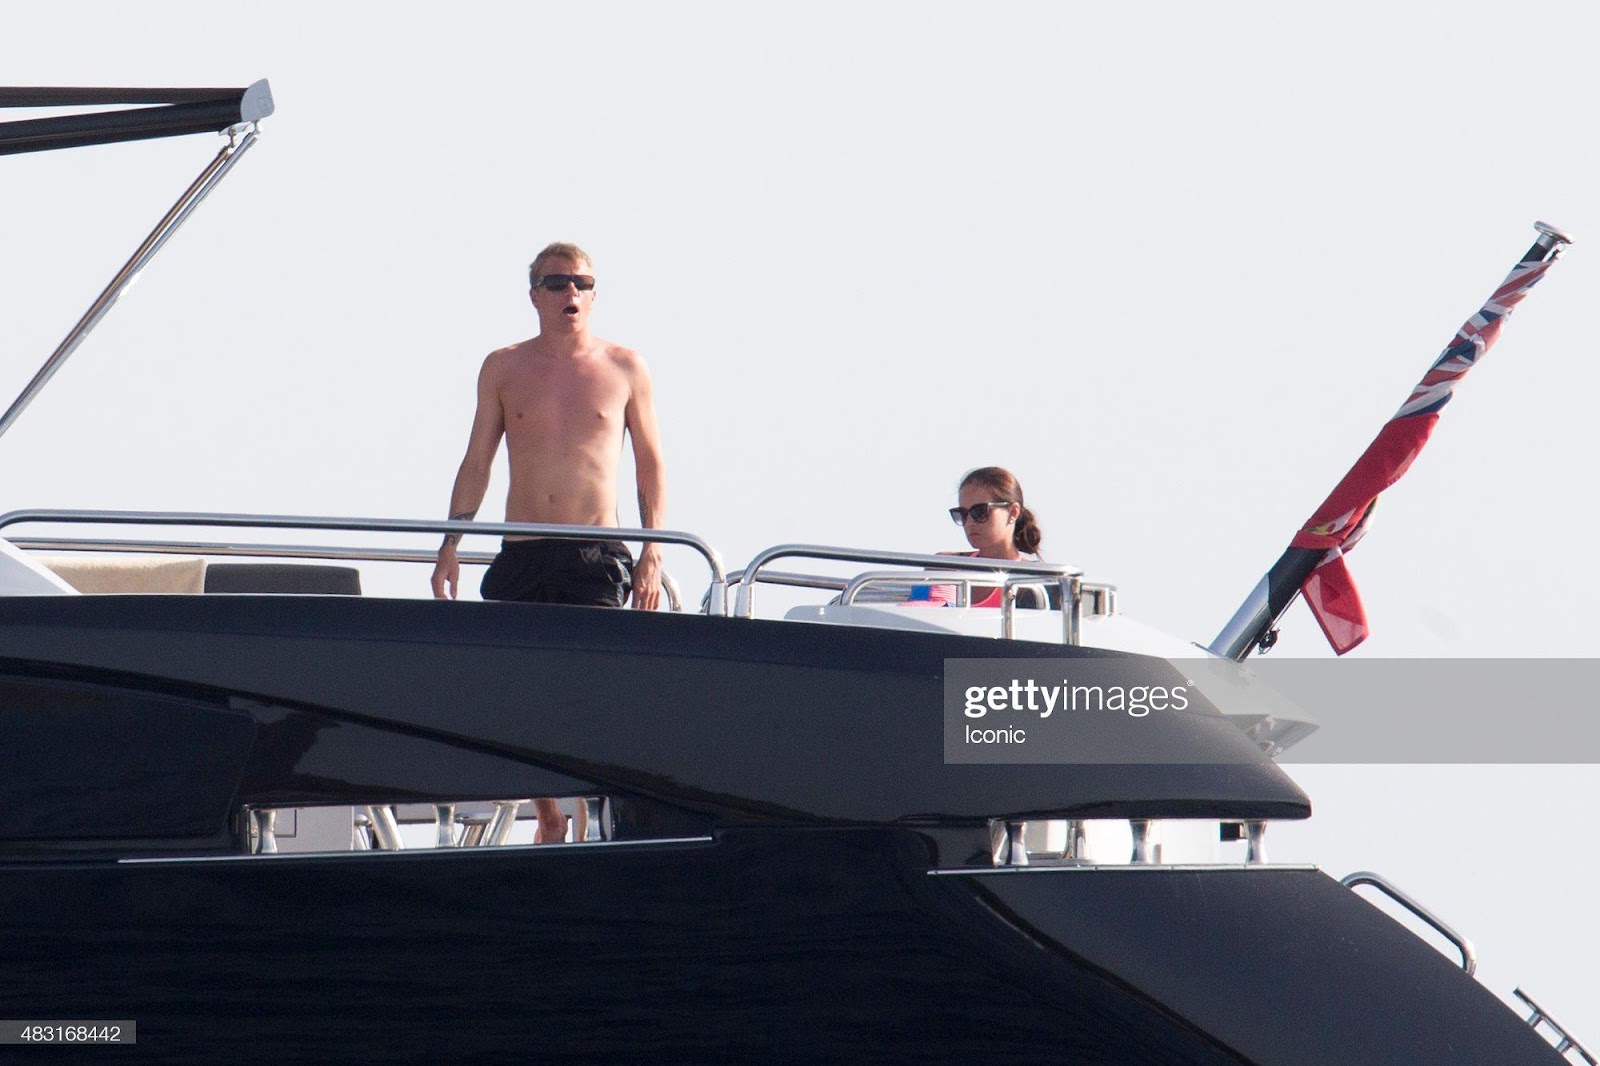 Kimi Raikkonen and Minttu Virtanen are seen on Iceman Yacht on August 6, 2015 in Ibiza, Spain.